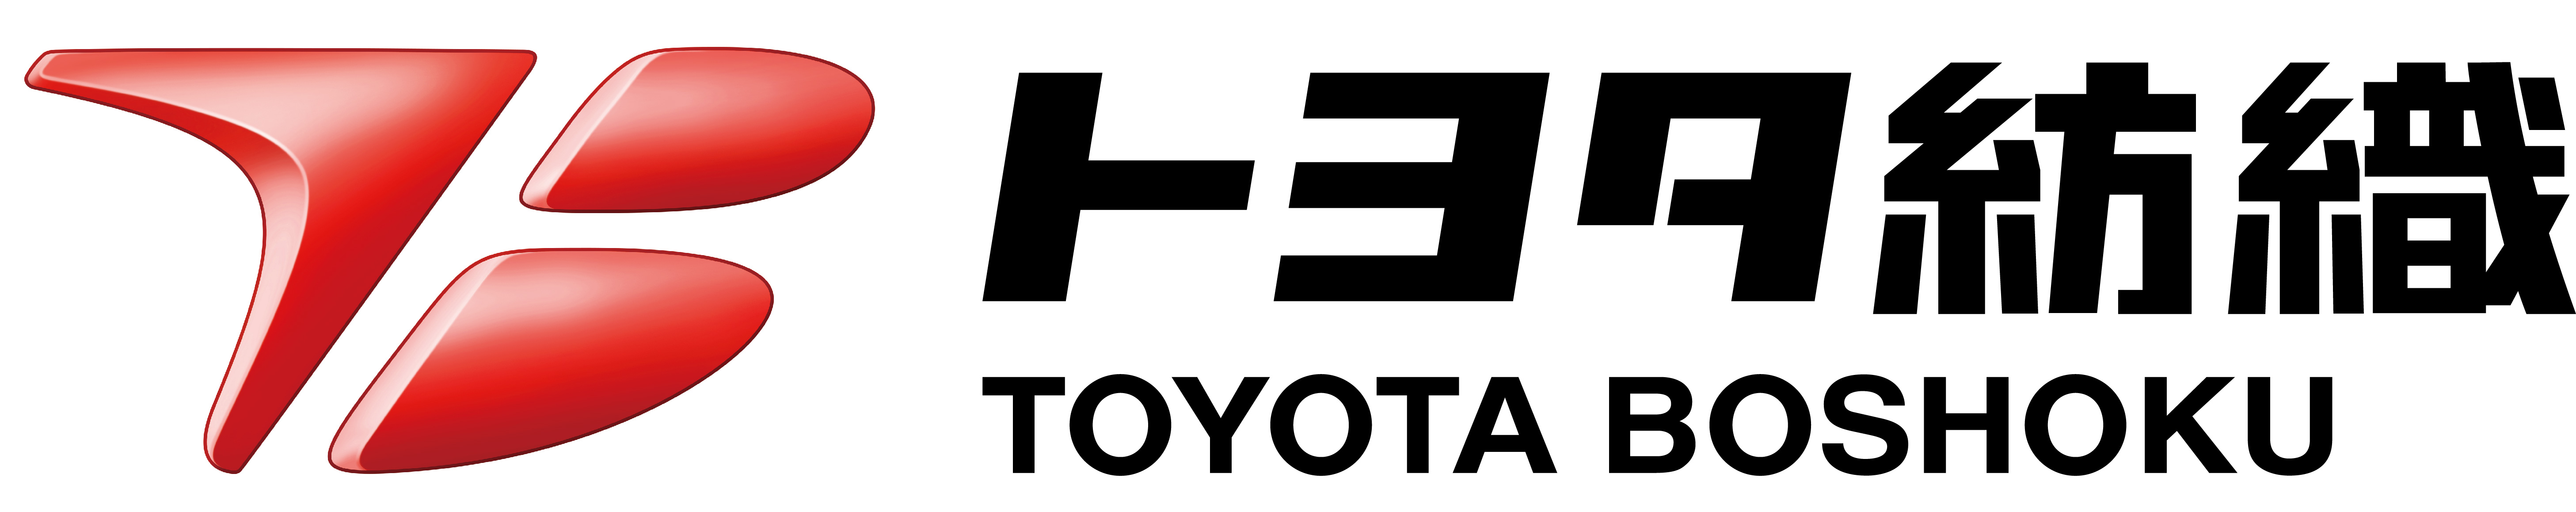 トヨタ紡織新ロゴ1